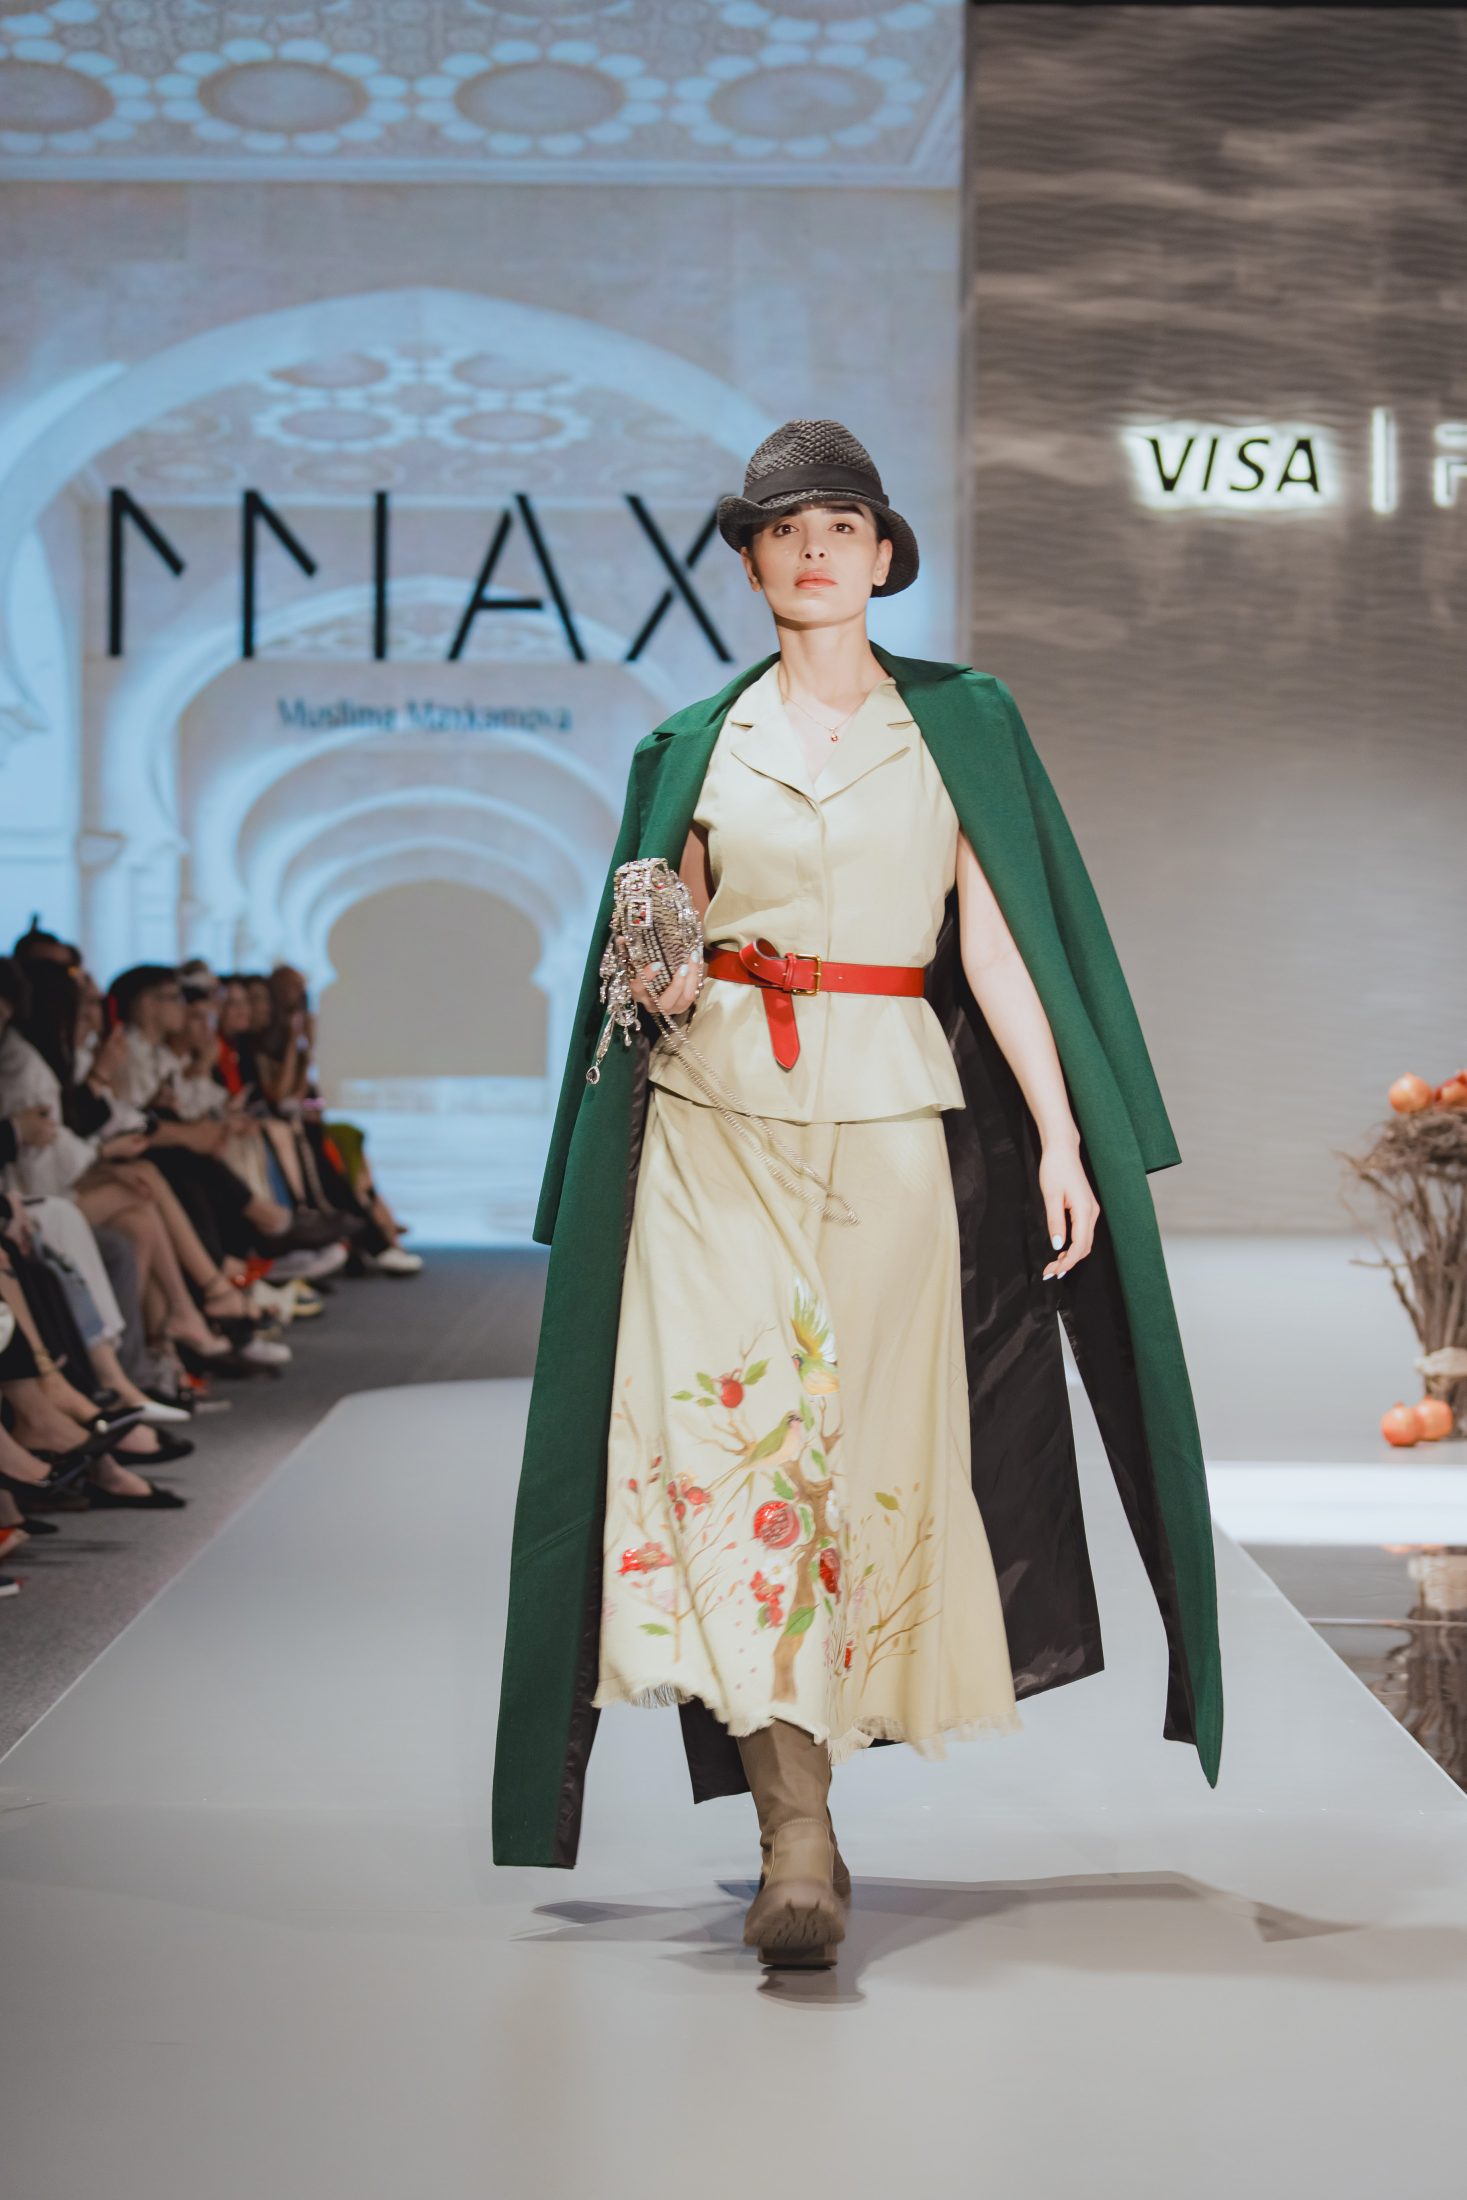 Природа, море и Эми Уайнхаус: второй день Visa Fashion Week Tashkent